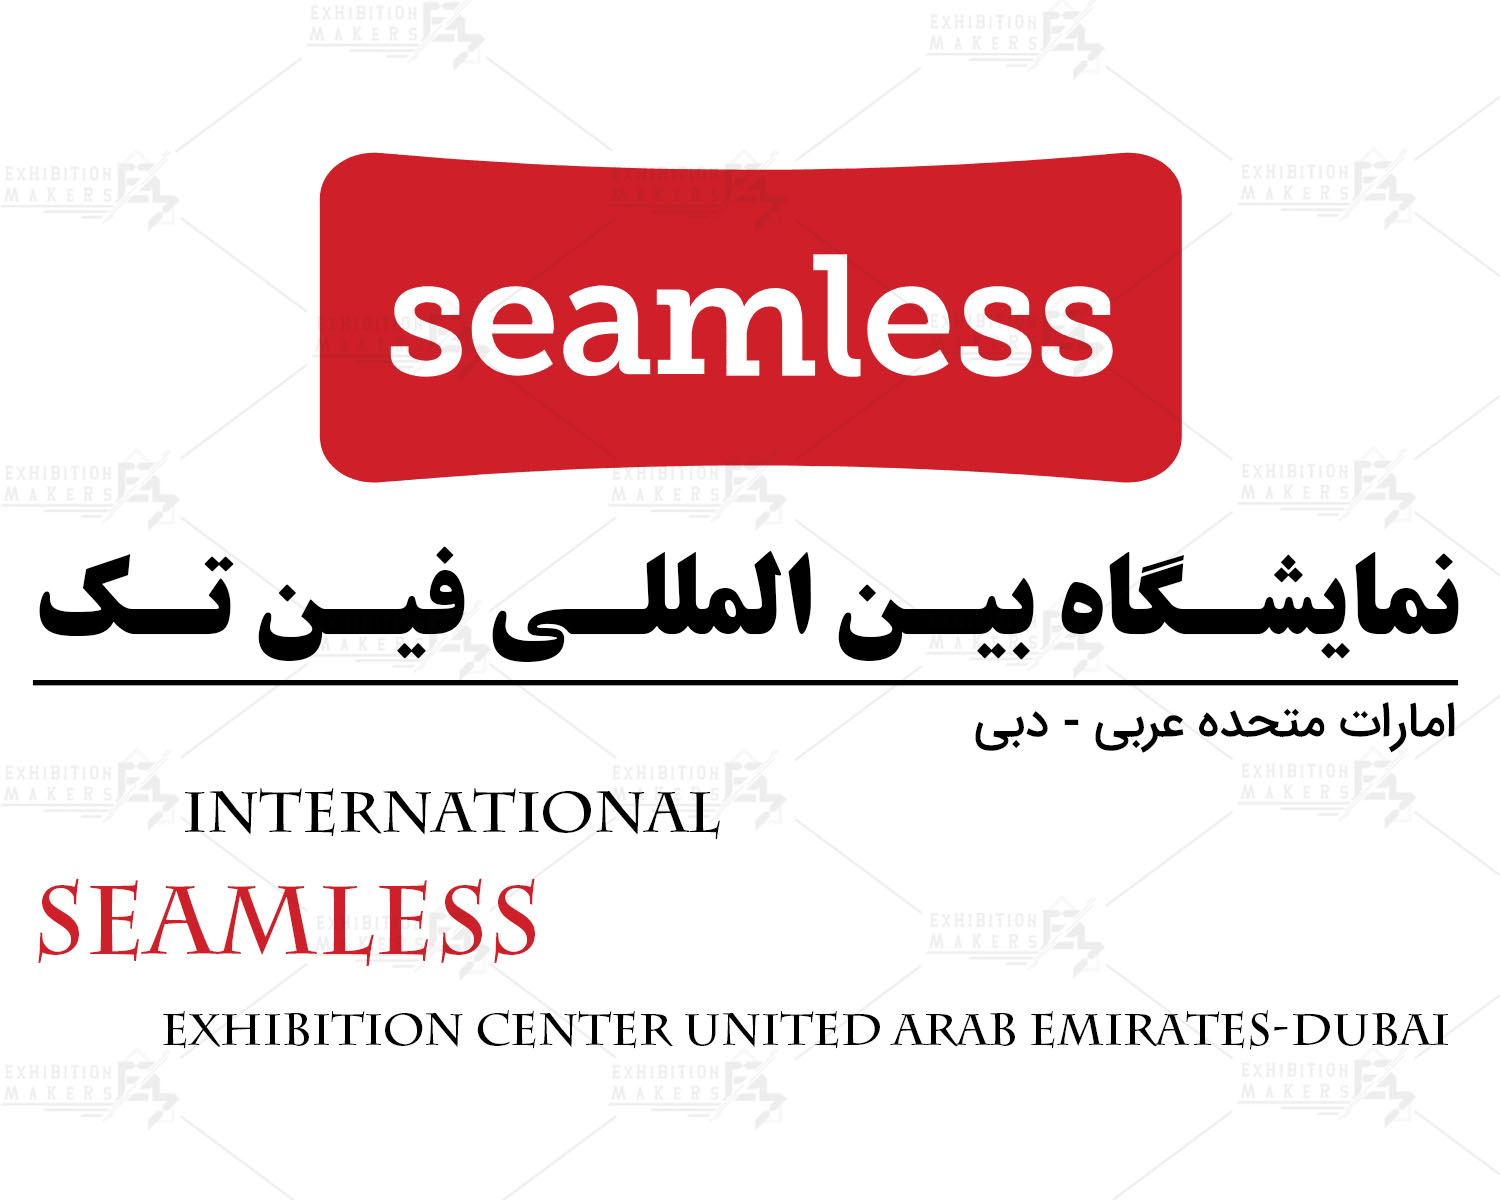 نمایشگاه بین المللی فین تک امارات متحده عربی- دبی